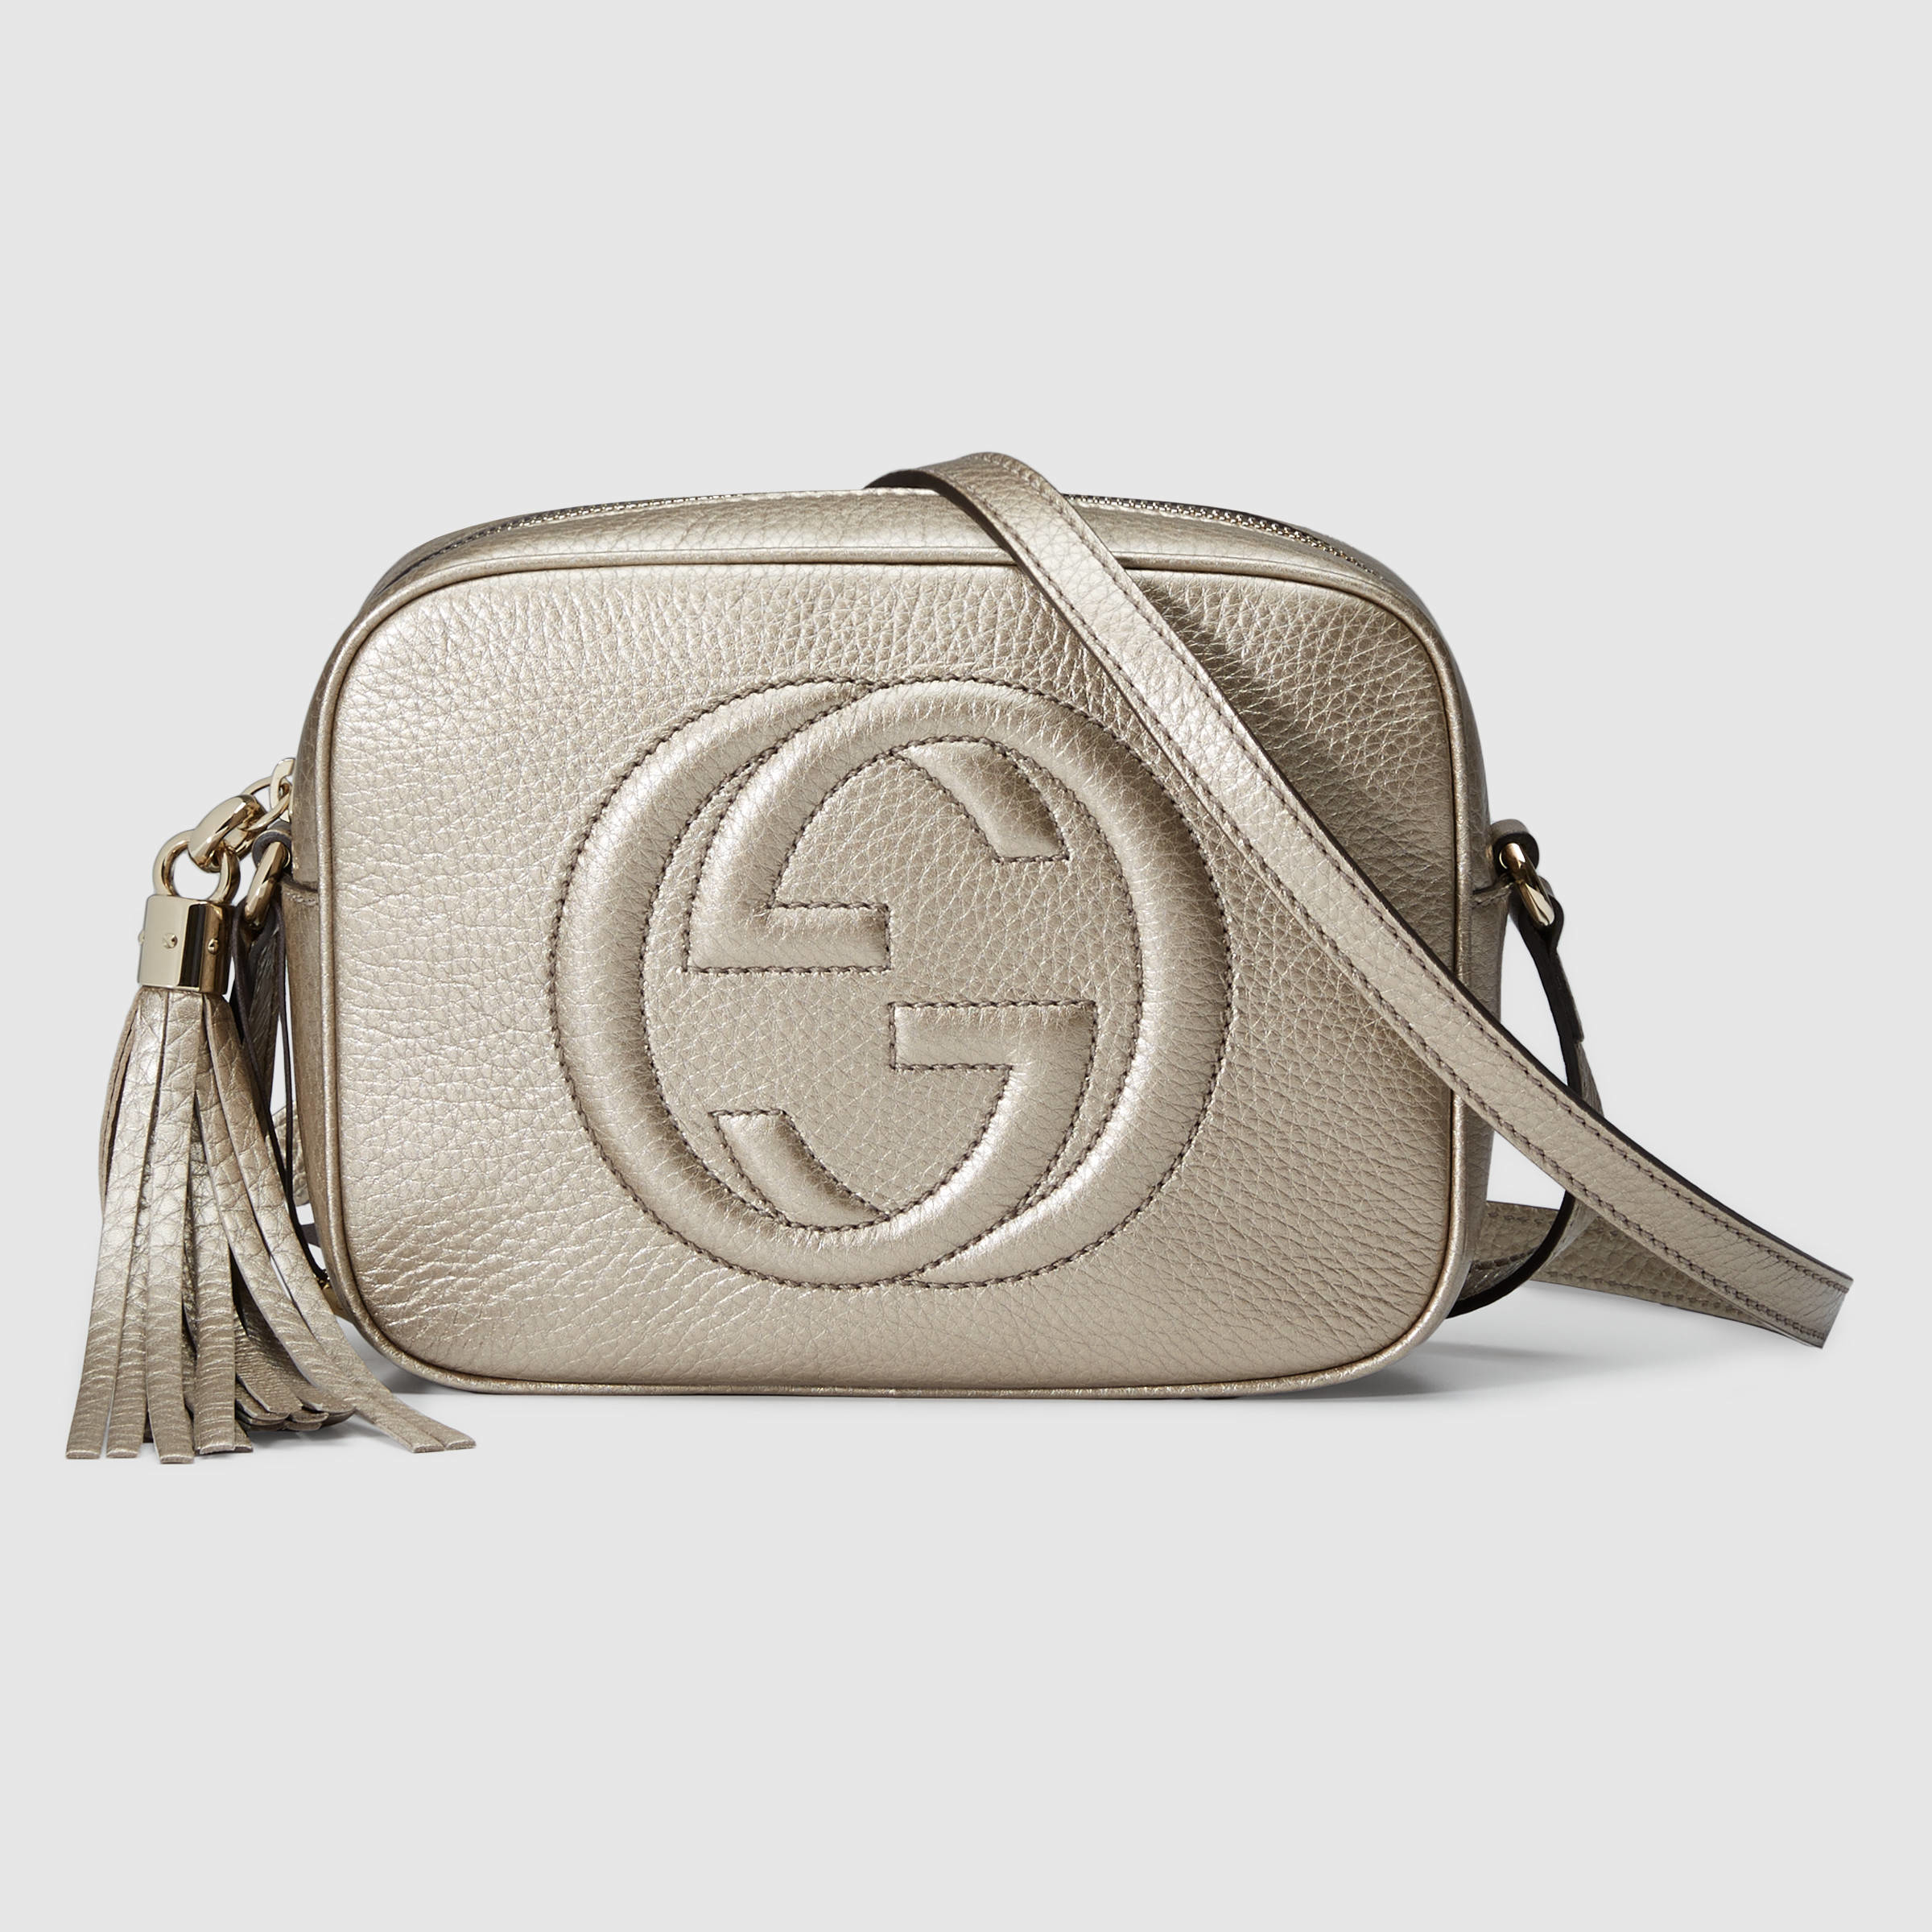 Gucci Soho Metallic Leather Disco Bag in Gold (metallic leather) | Lyst